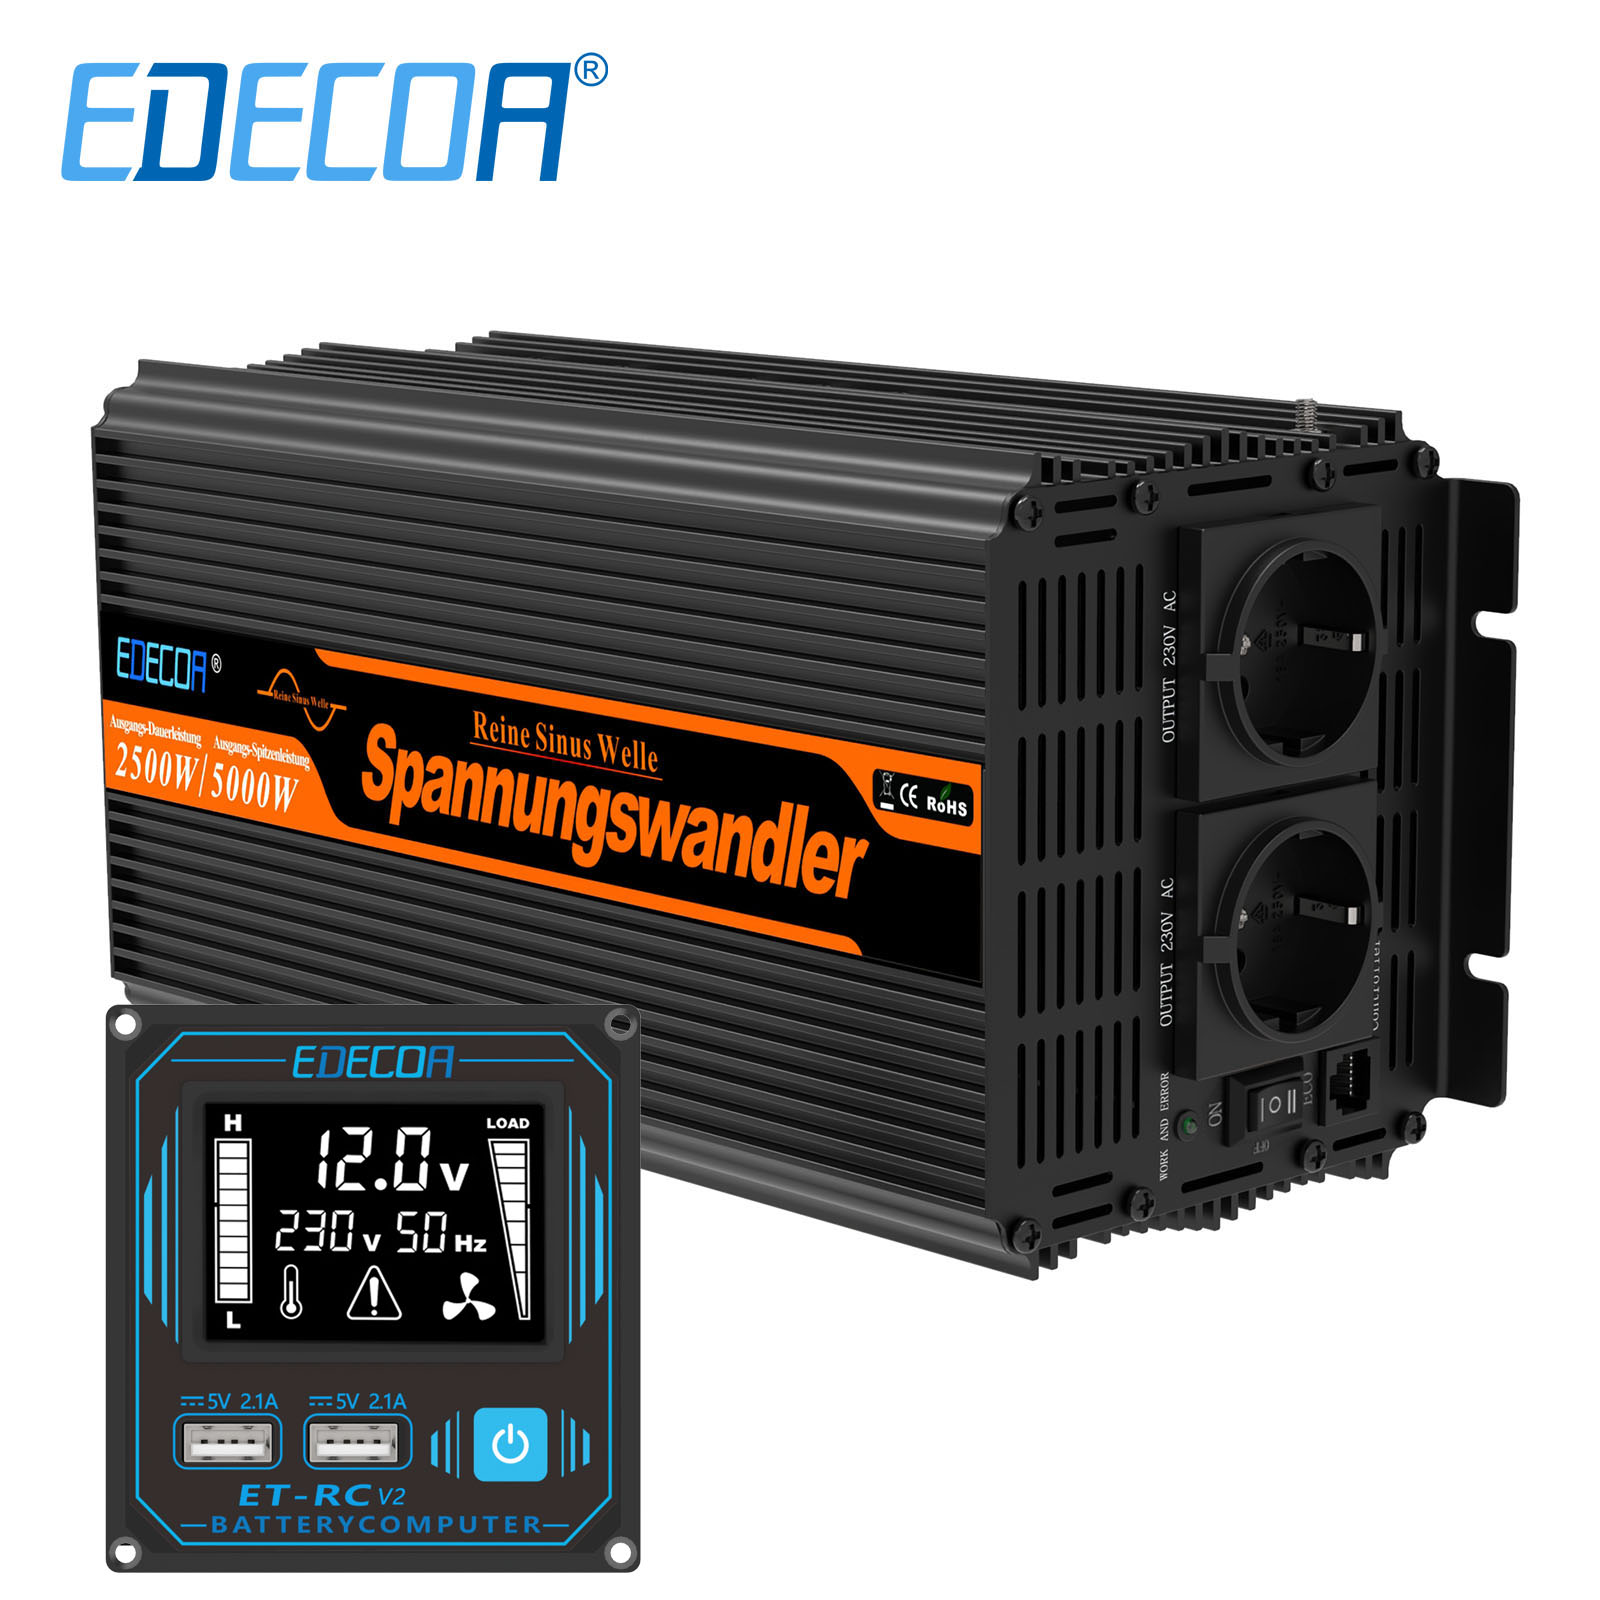 Ab EUR 386,55: EDECOA Pro Wechselrichter 2500W mit Ladegerät und  Netzvorrangschaltung Steuersatz 0% MwSt. (Solarförderung gemäß §12 Abs. 3  UStG.)